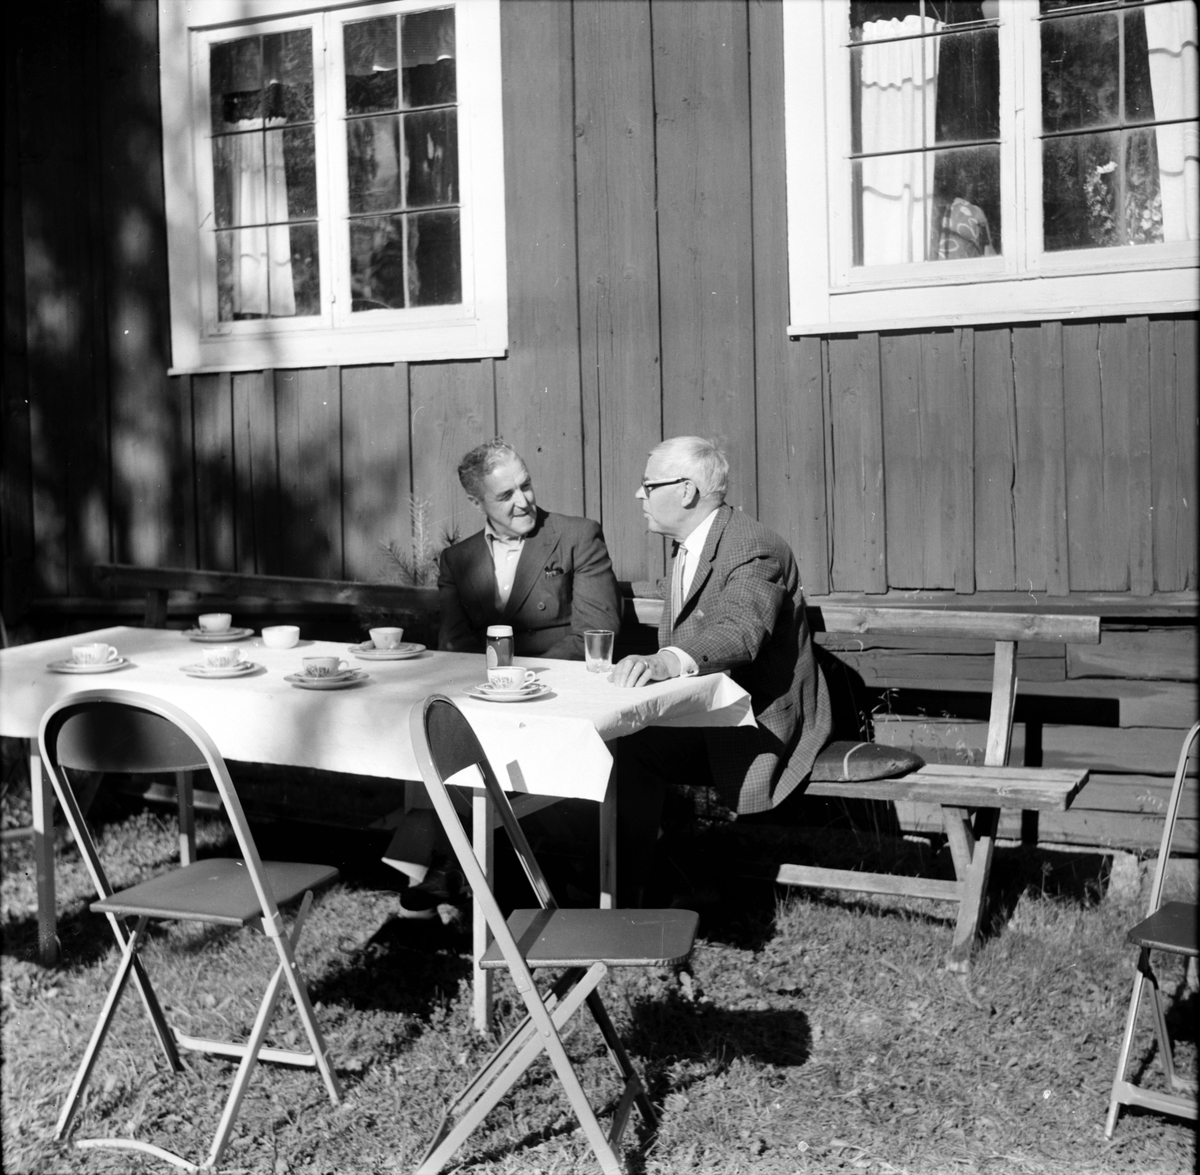 Arbrå,
Servering på Kämpens,
P.W. Häger o P.O. Johansson,
8 Augusti 1971